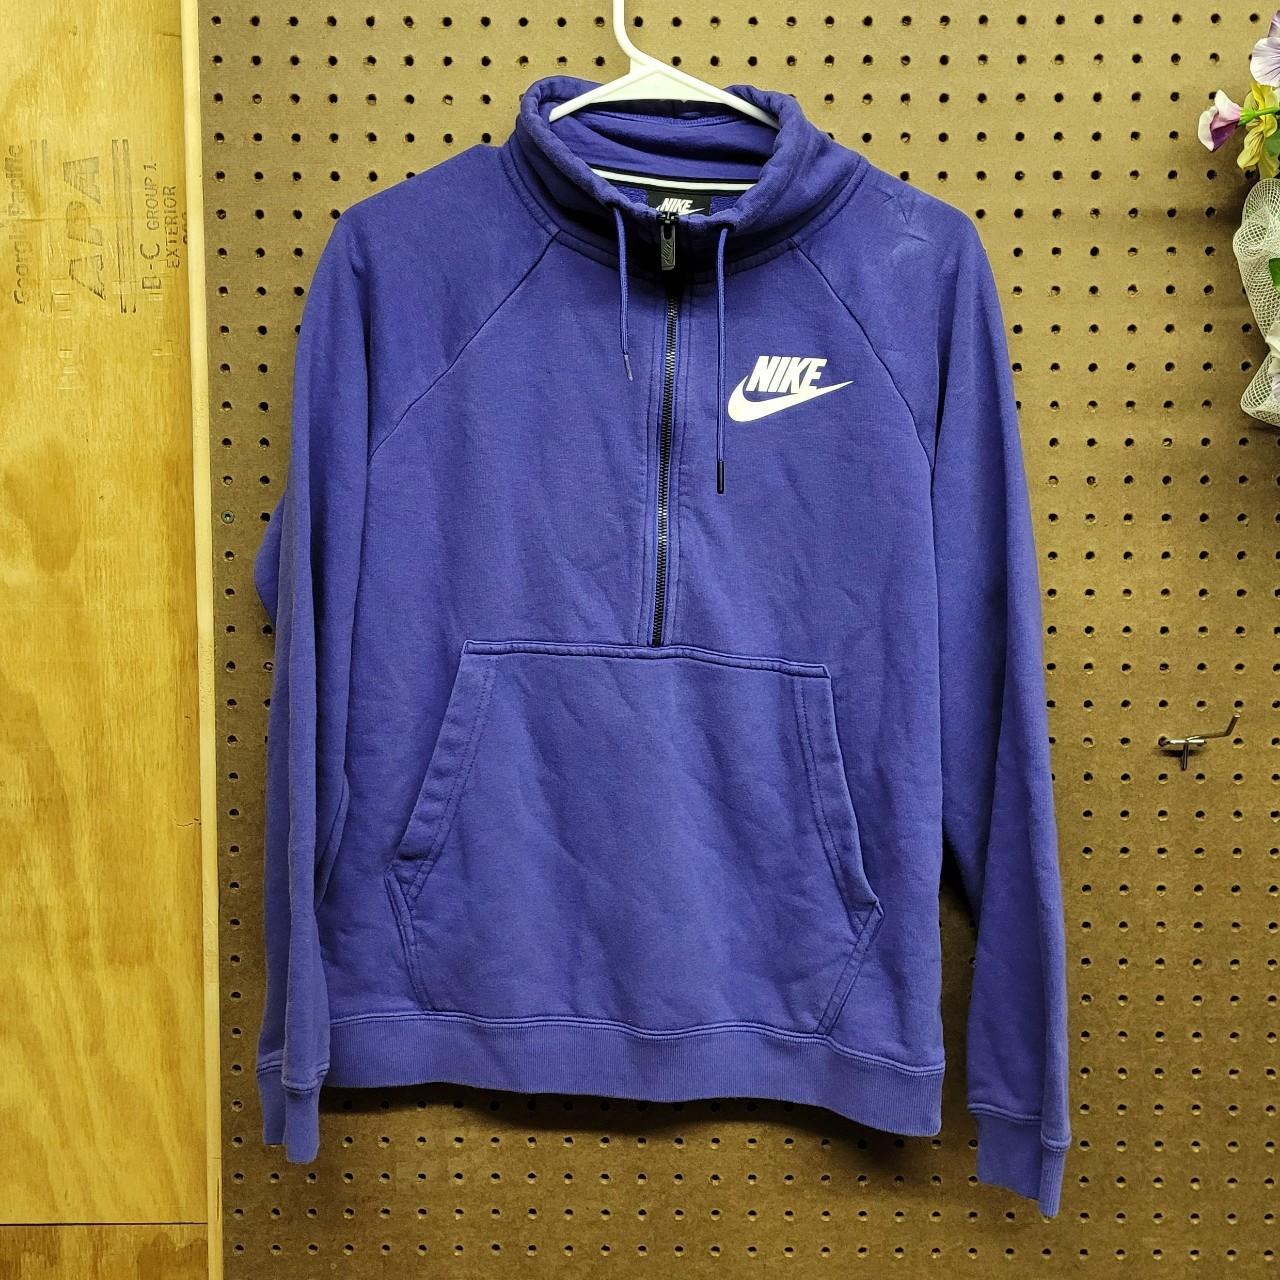 Used Purple Nike 1/4 zip sweater size men's M If... - Depop